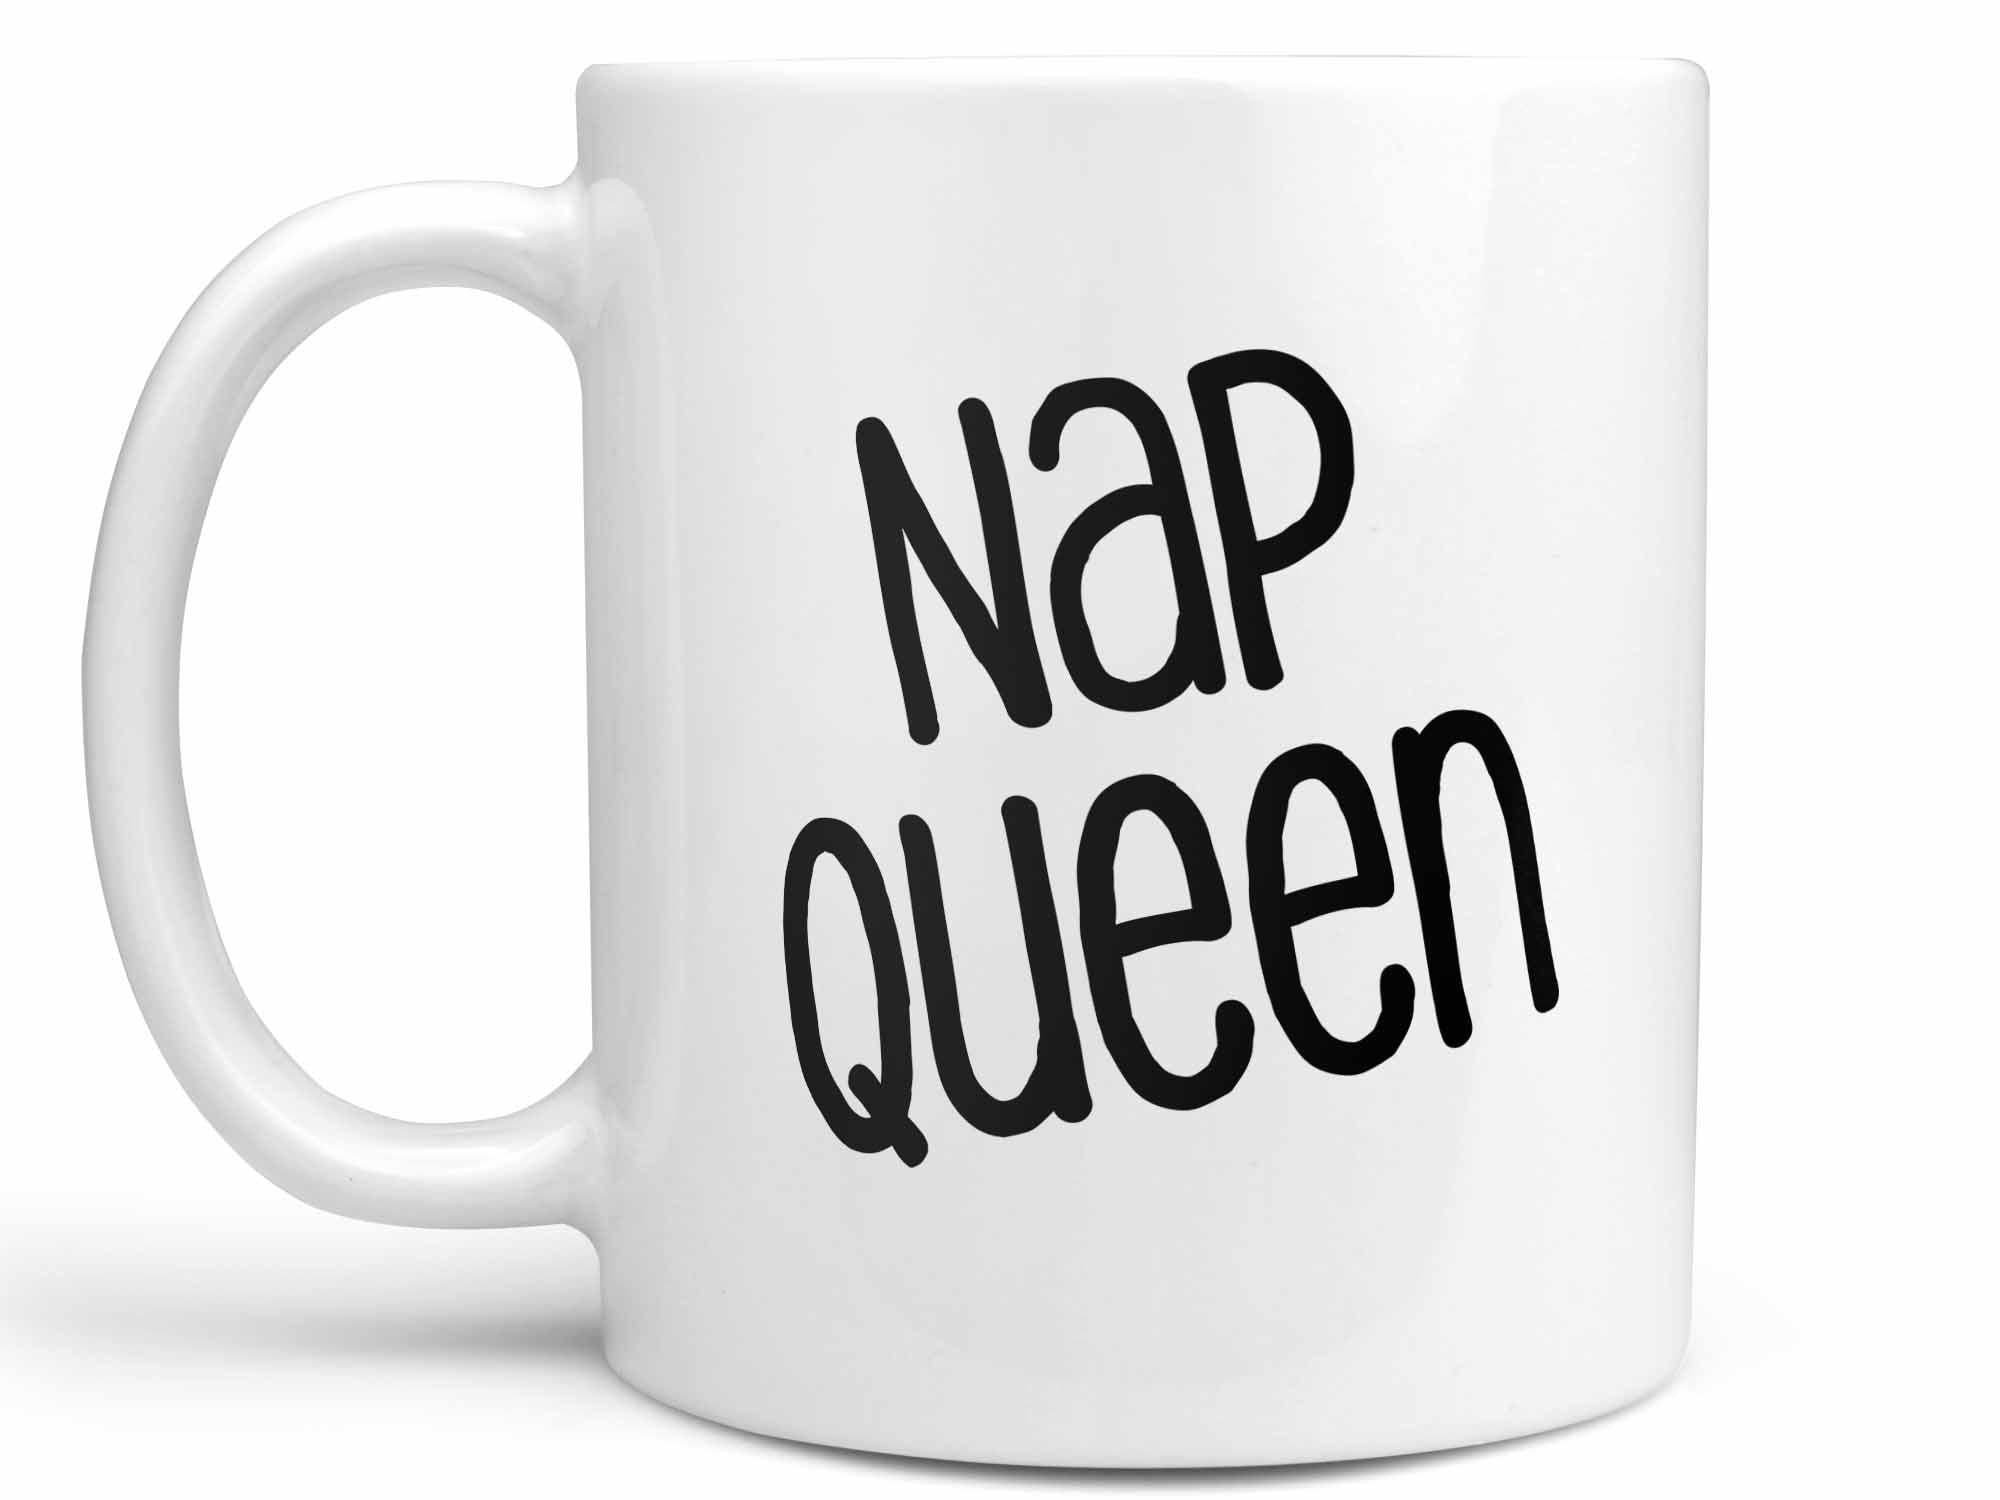 Nap Queen Coffee Mug